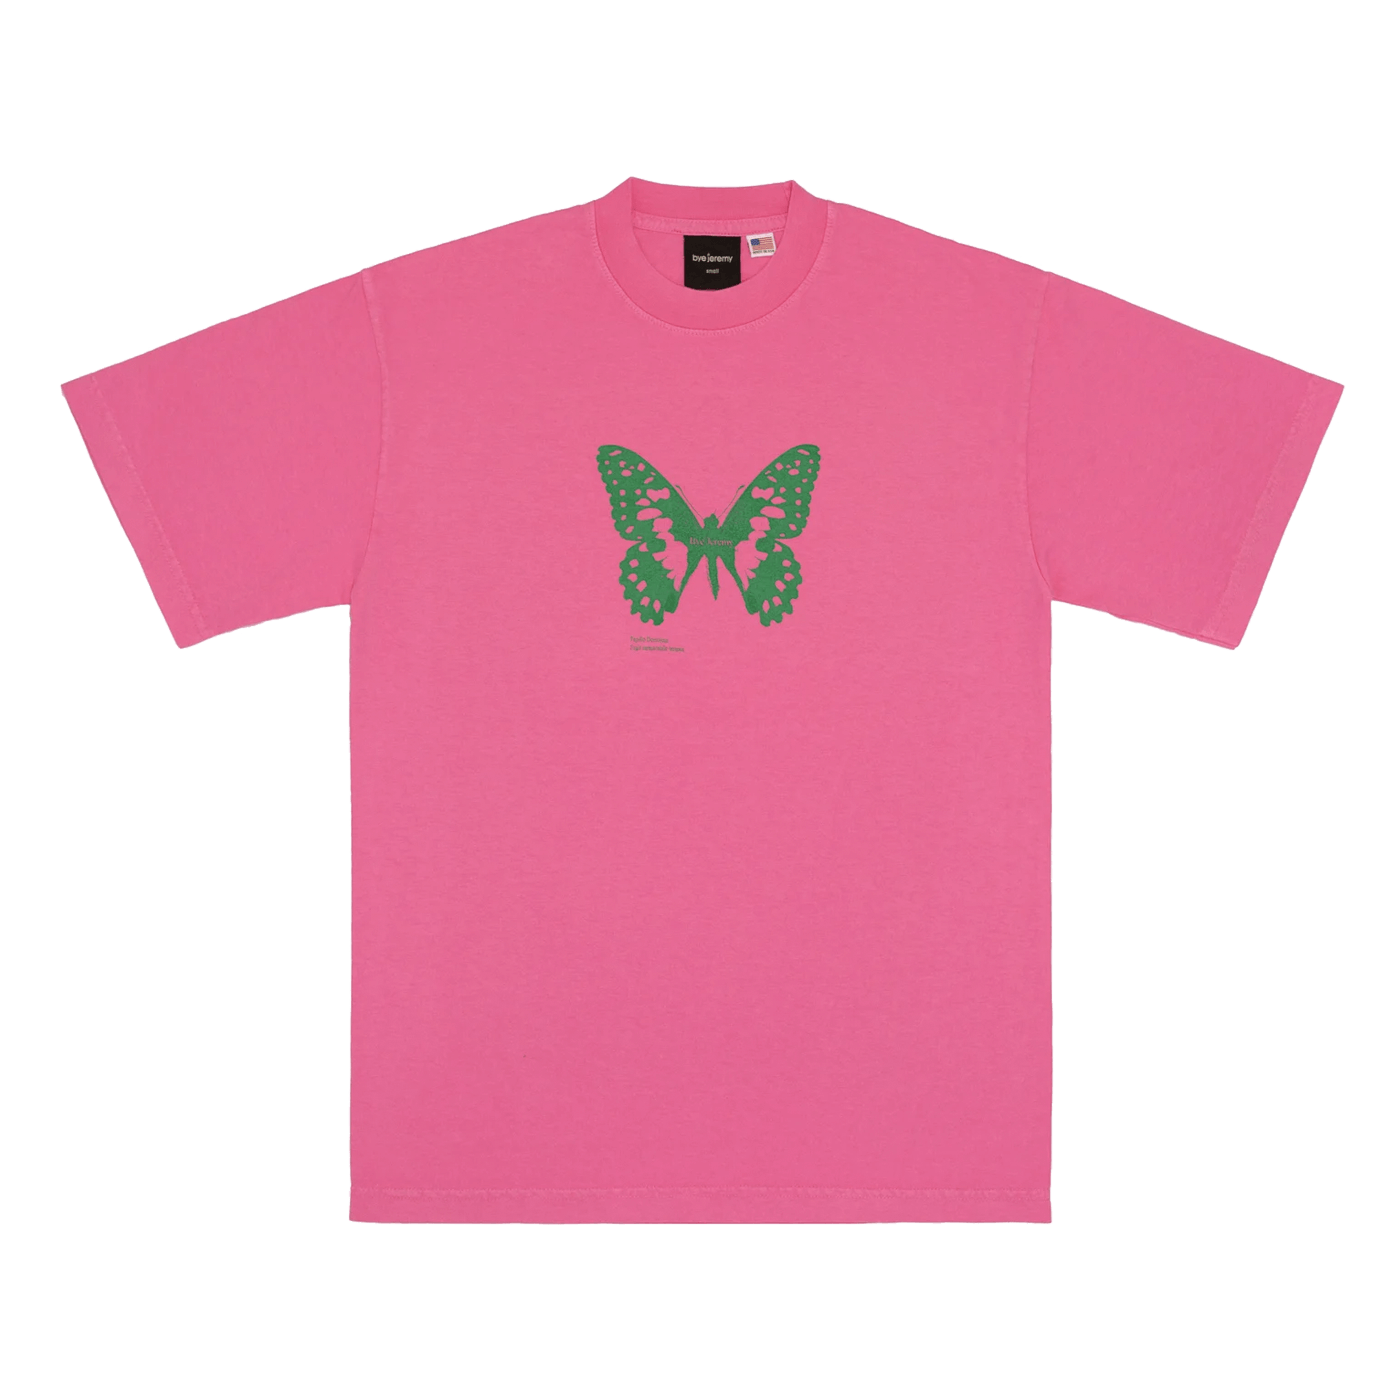 Bye Jeremy Butterfly Tee Pink Green